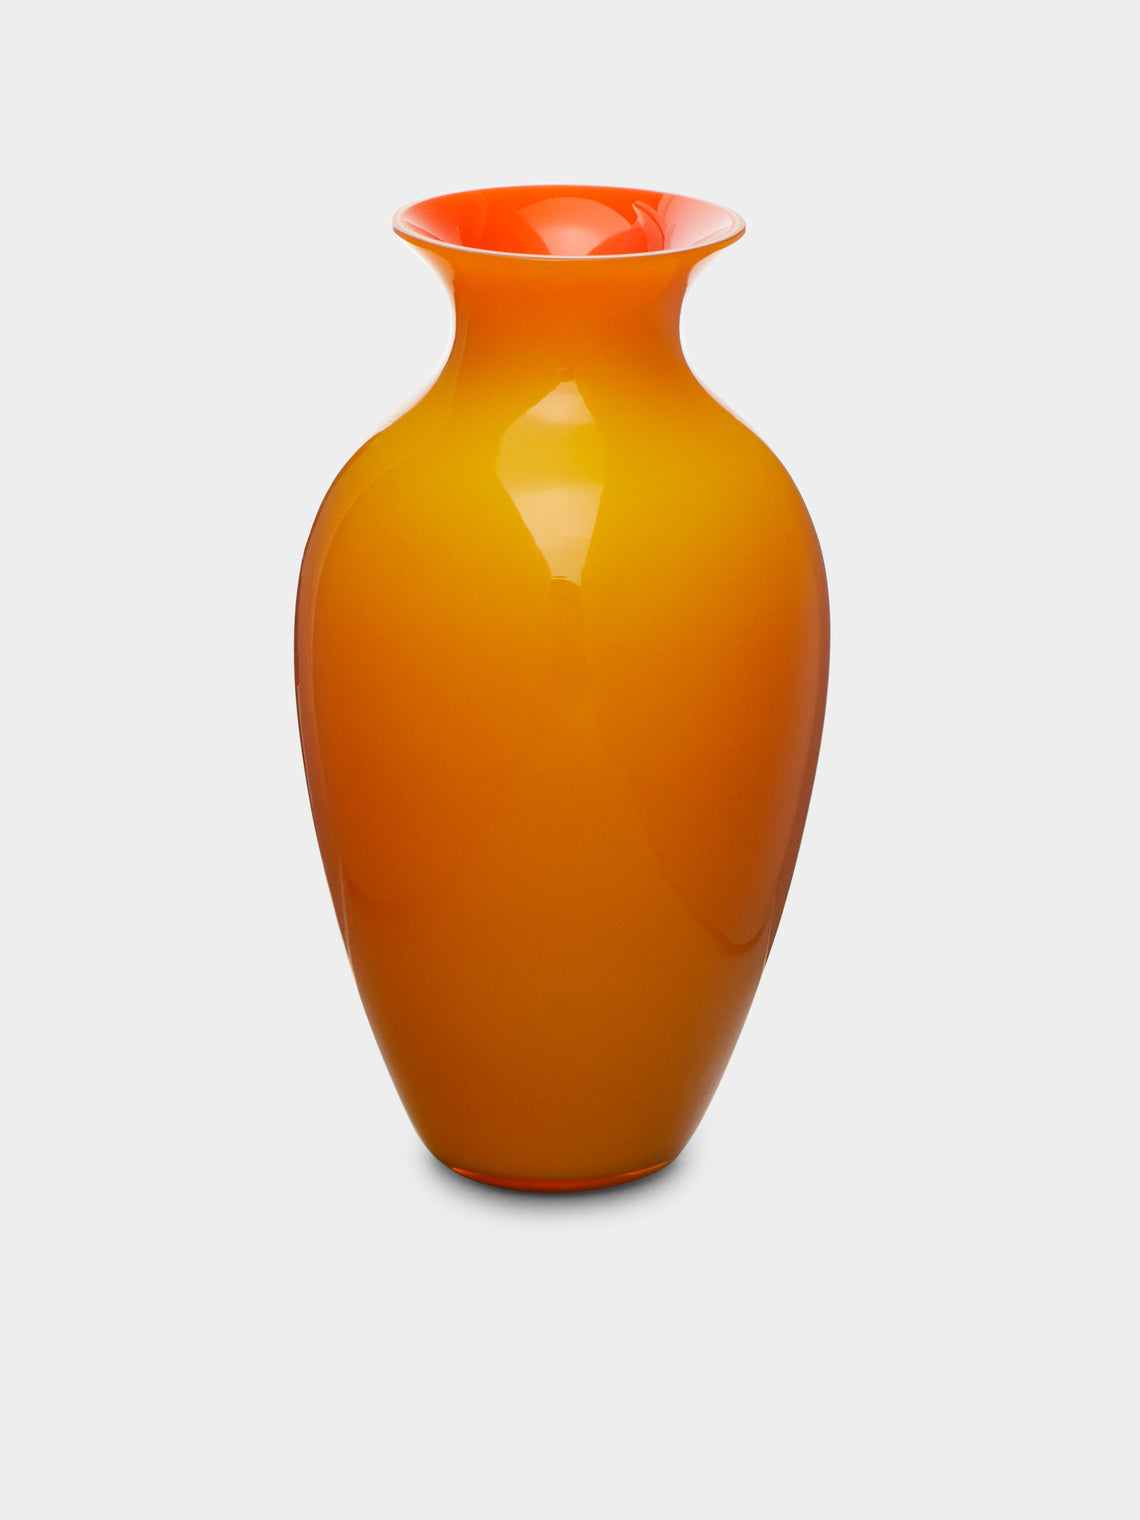 NasonMoretti - Antares Hand-Blown Murano Glass Bud Vase -  - ABASK - 